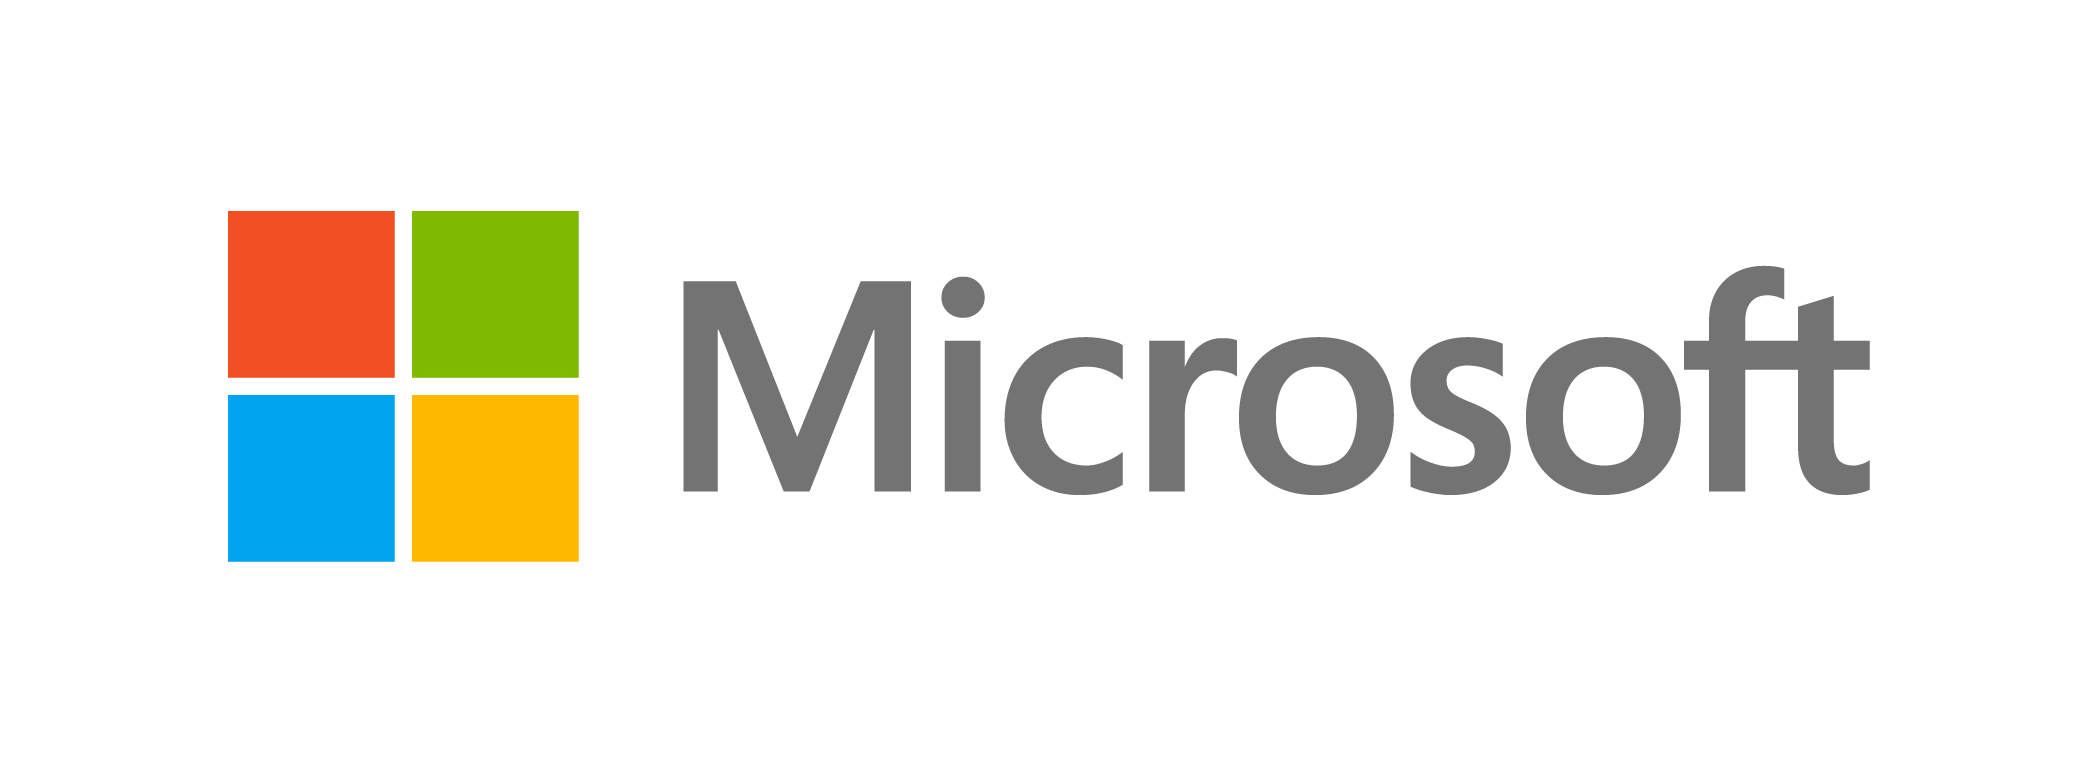 SCOM Logo - Microsoft SCOM Integration